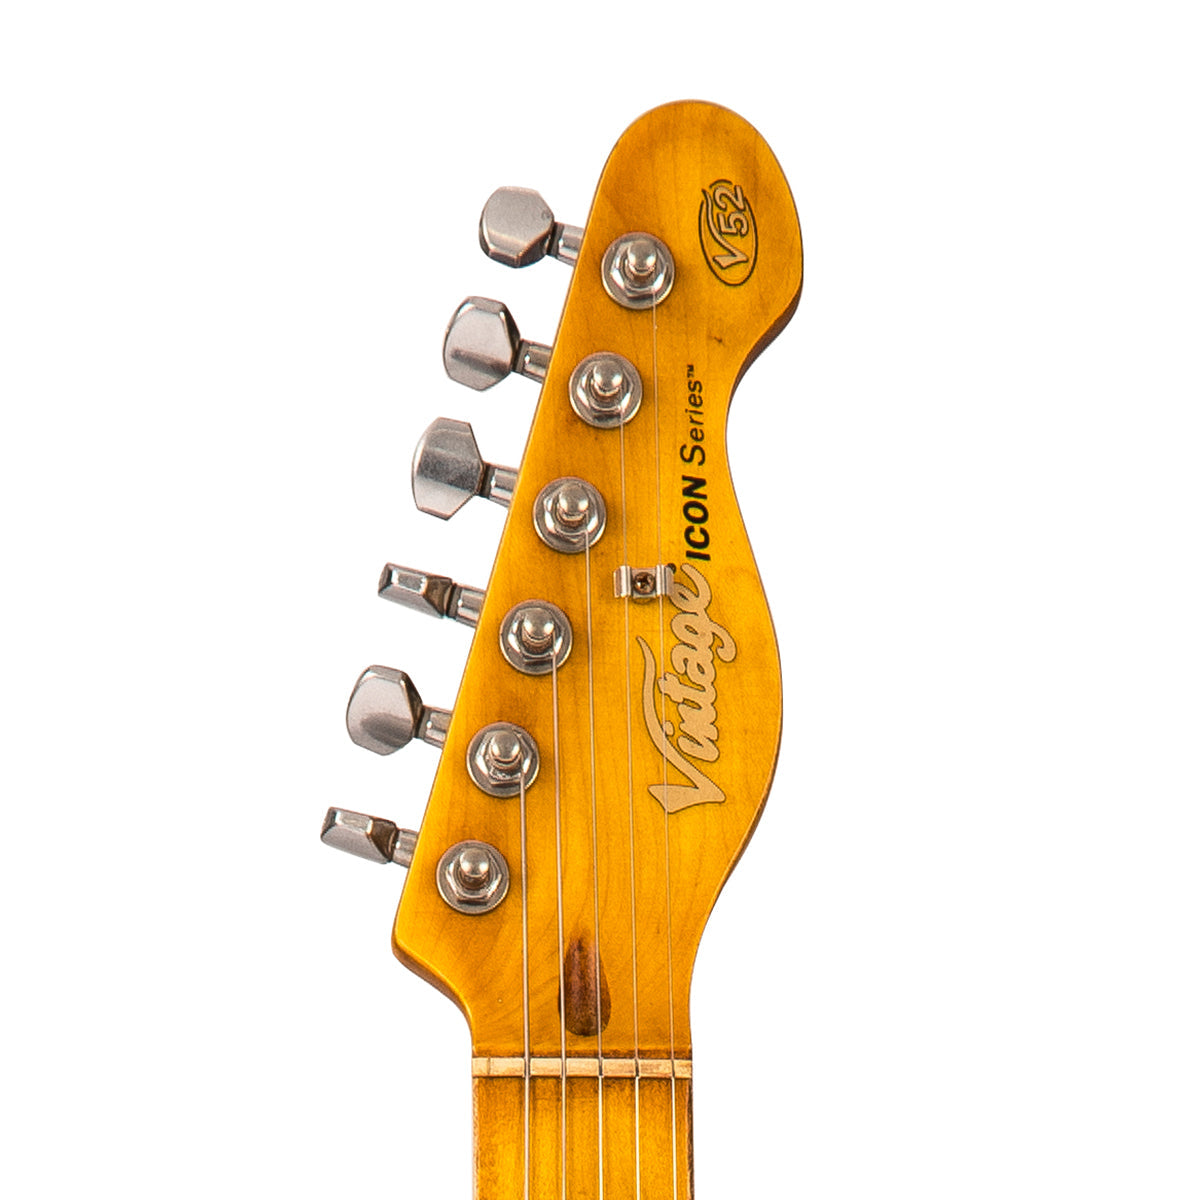 SOLD - Vintage V52 ProShop Unique ~ Brown Sugar, Electric Guitars for sale at Richards Guitars.